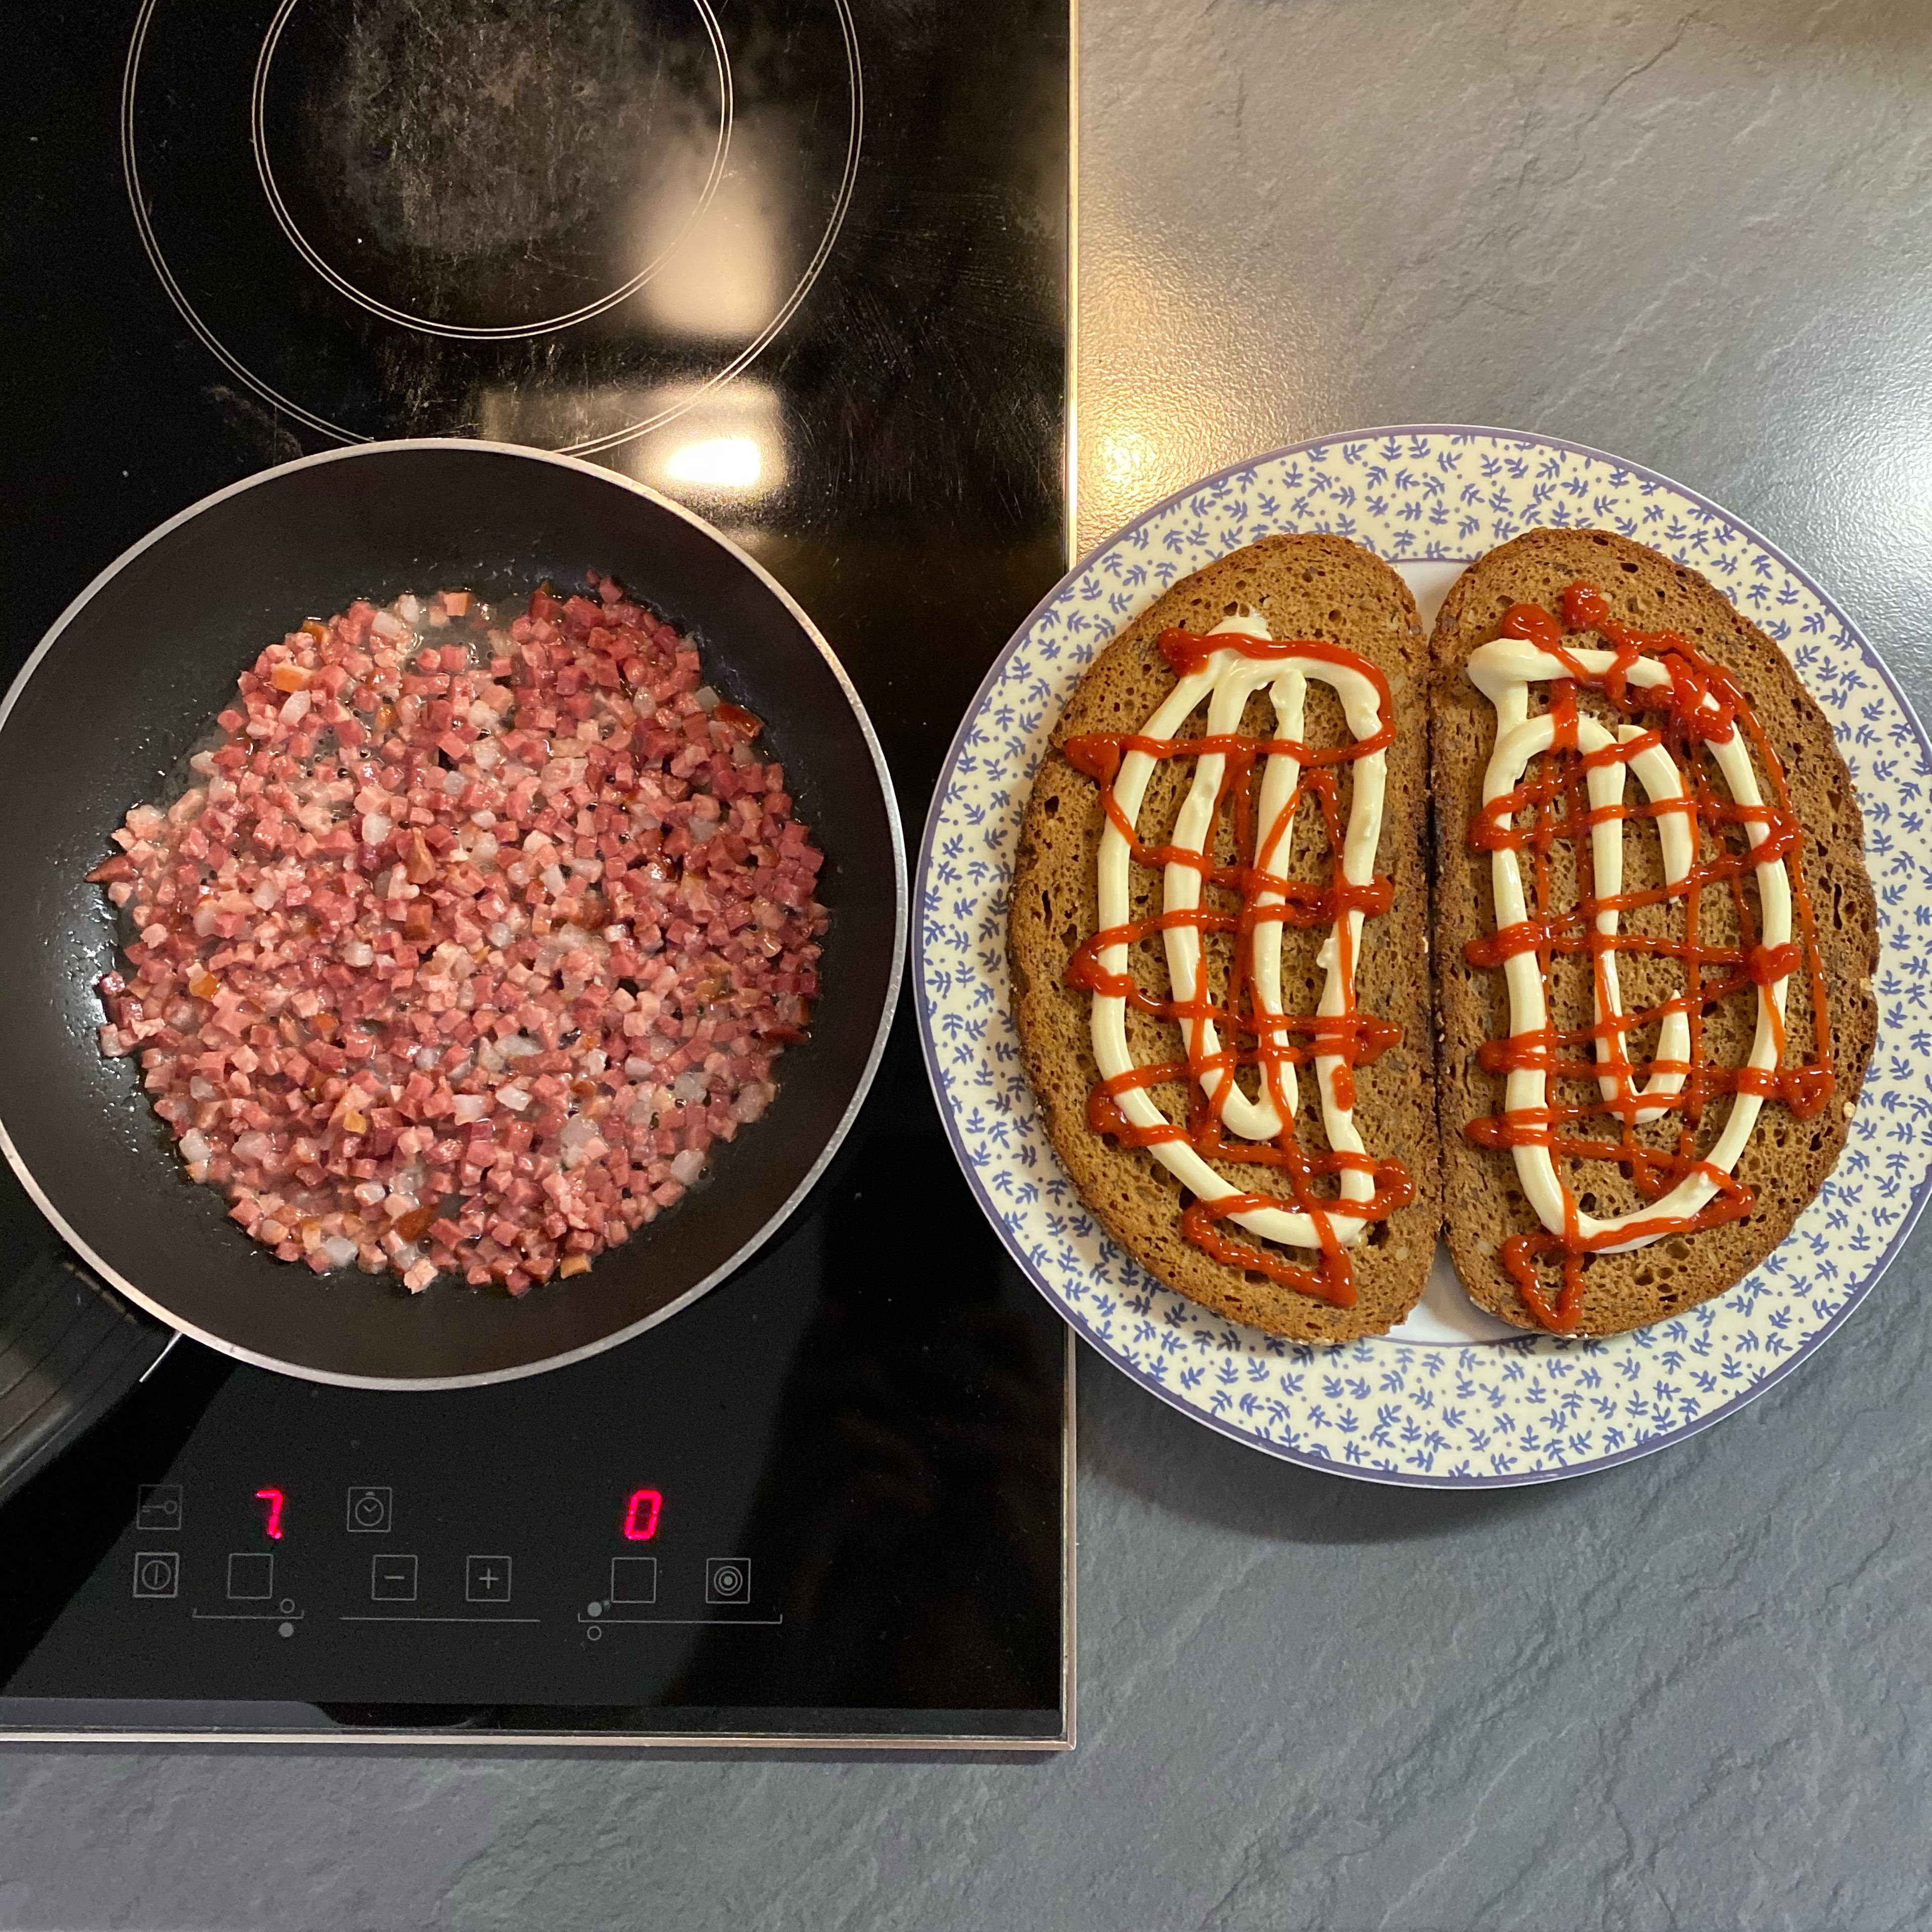 Den Bacon (Streifen oder Würfel) in ein wenig Öl anbraten. Währenddessen das Vollkornbrot auf einen Teller legen und teilweise mit Ketchup und Mayonnaise bedecken.